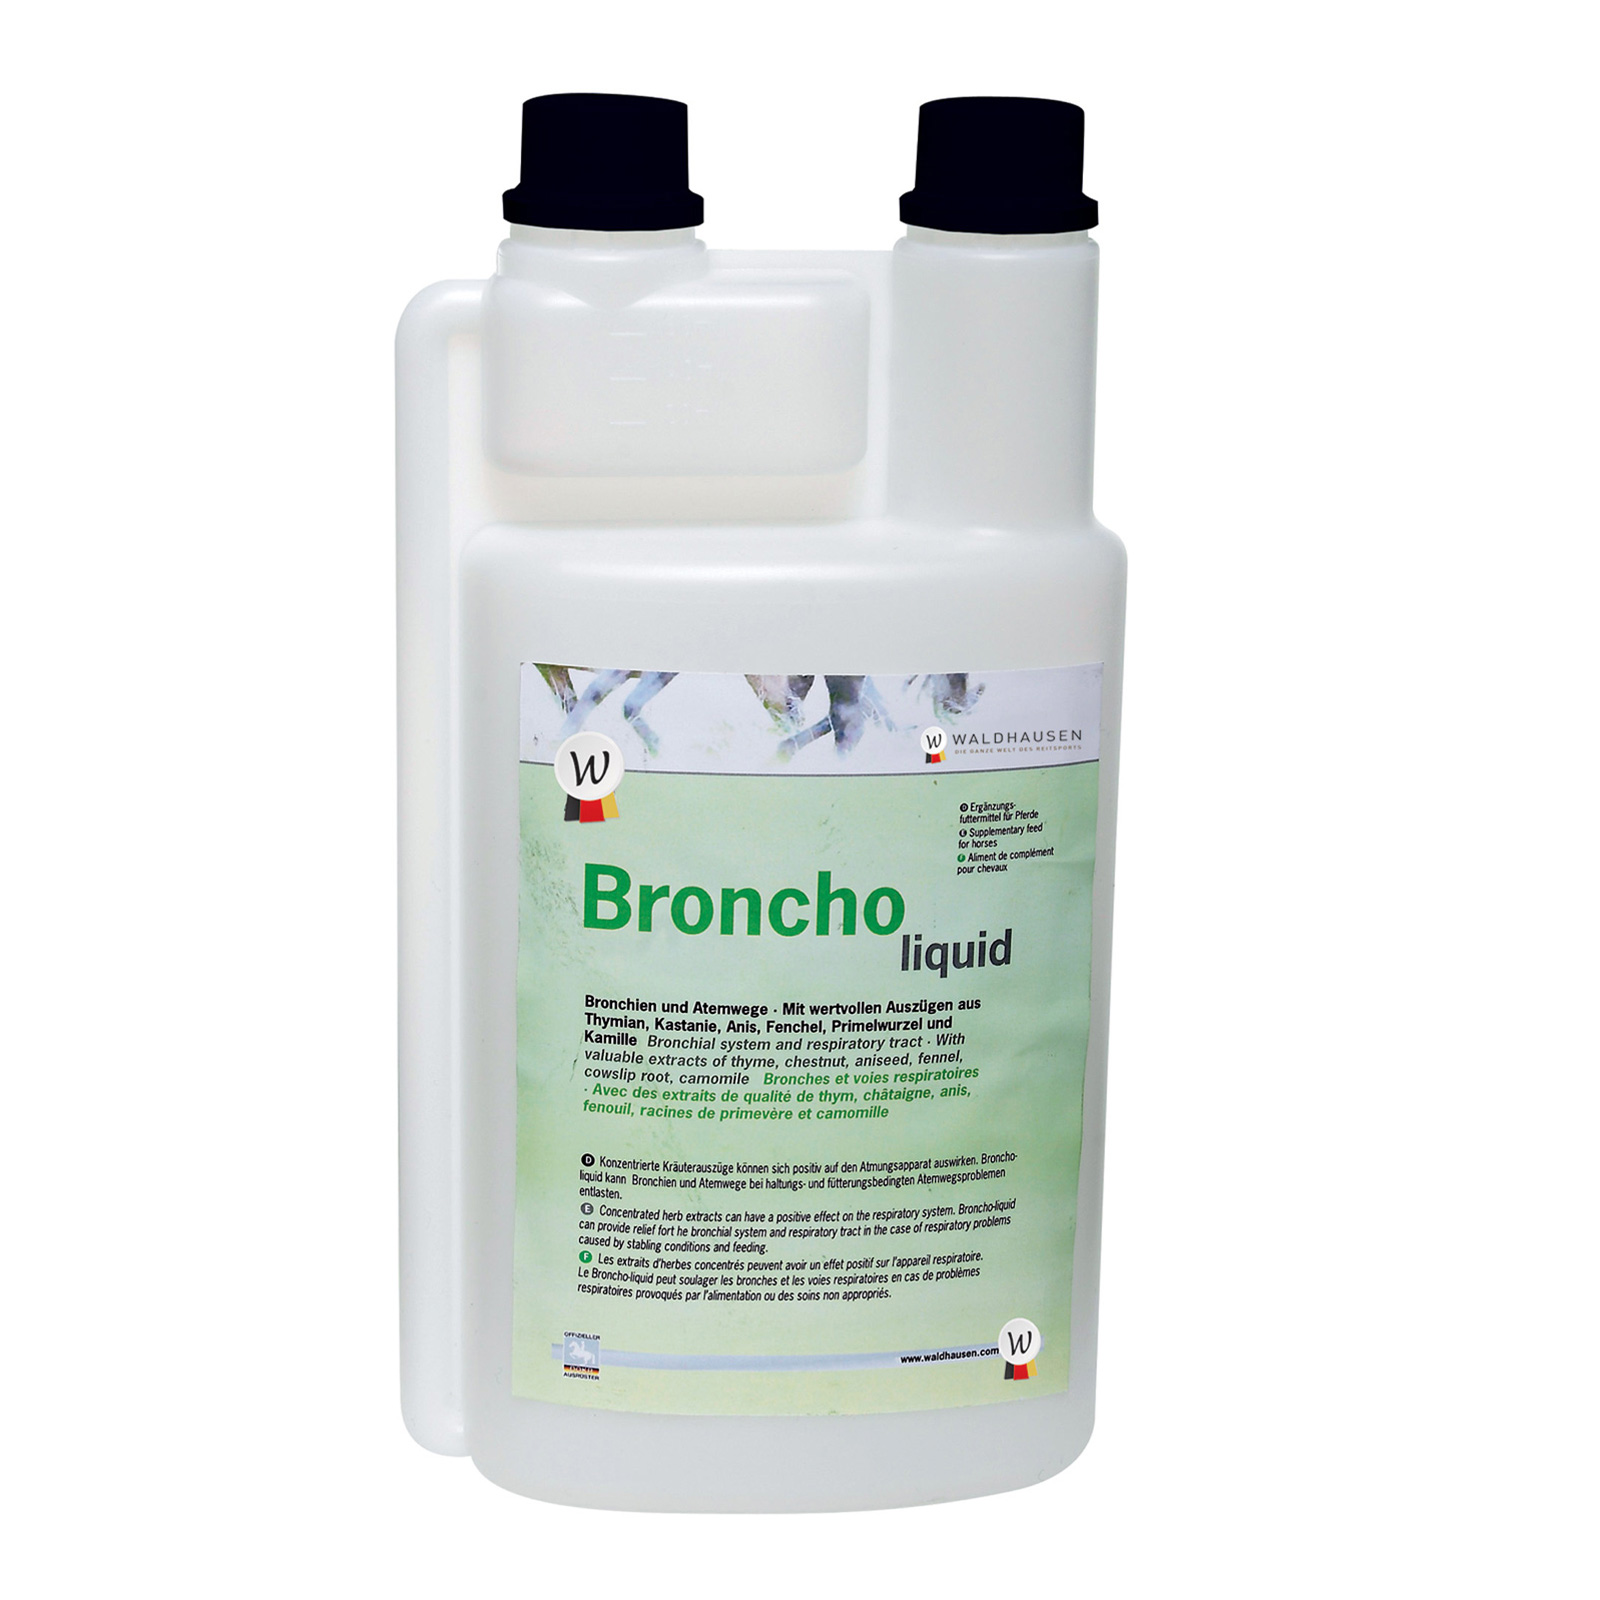 Broncho liquid - Bronchien und Atemwege, 1 l